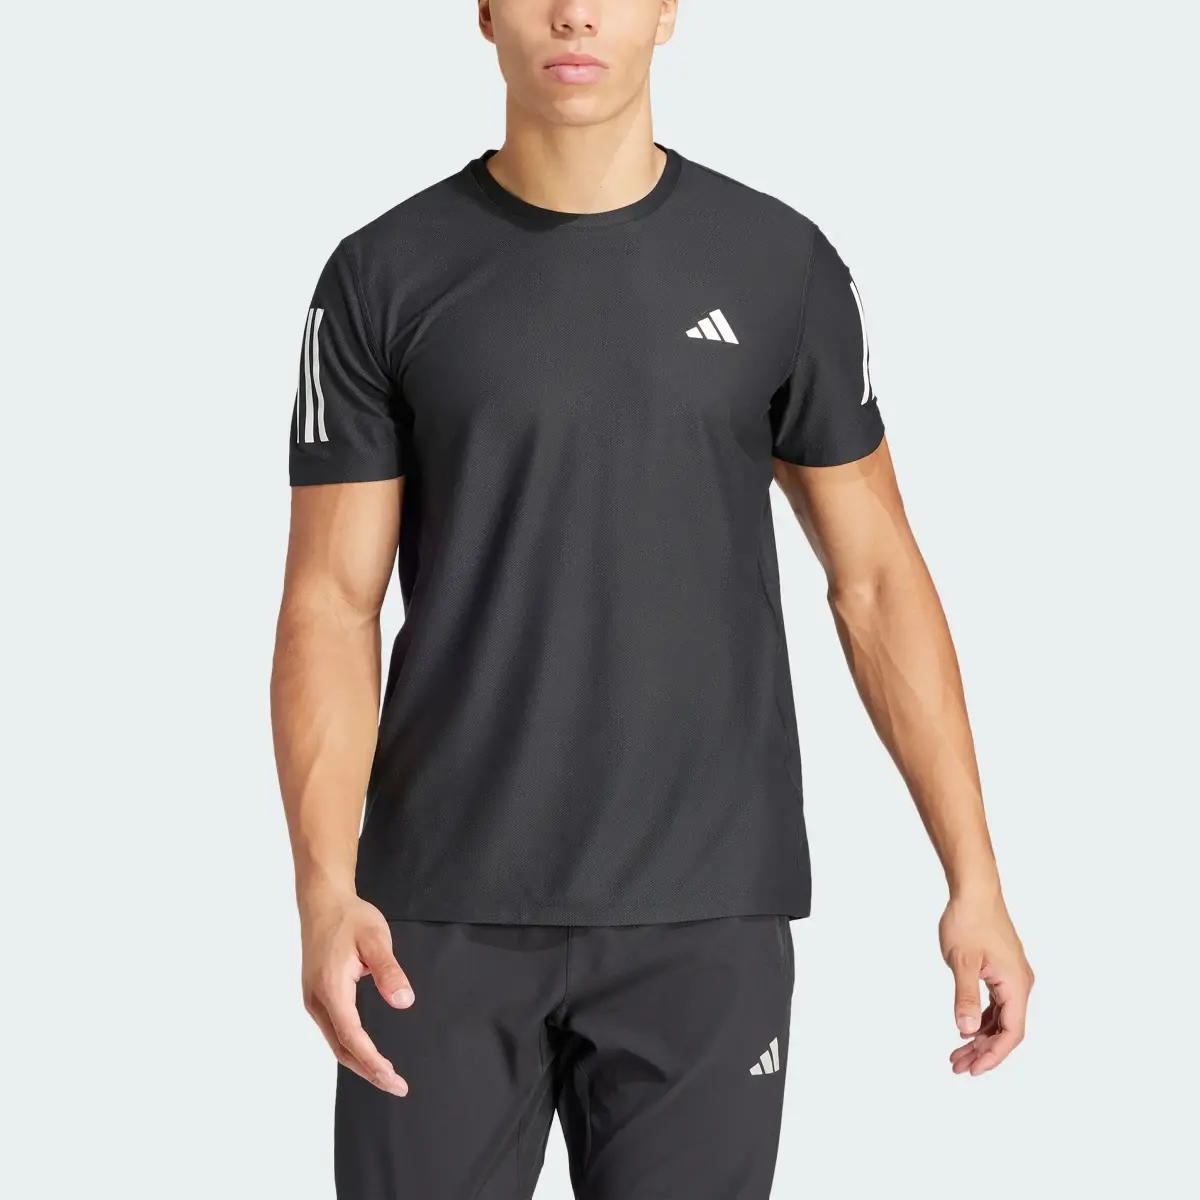 Adidas T-shirt Own the Run. 1